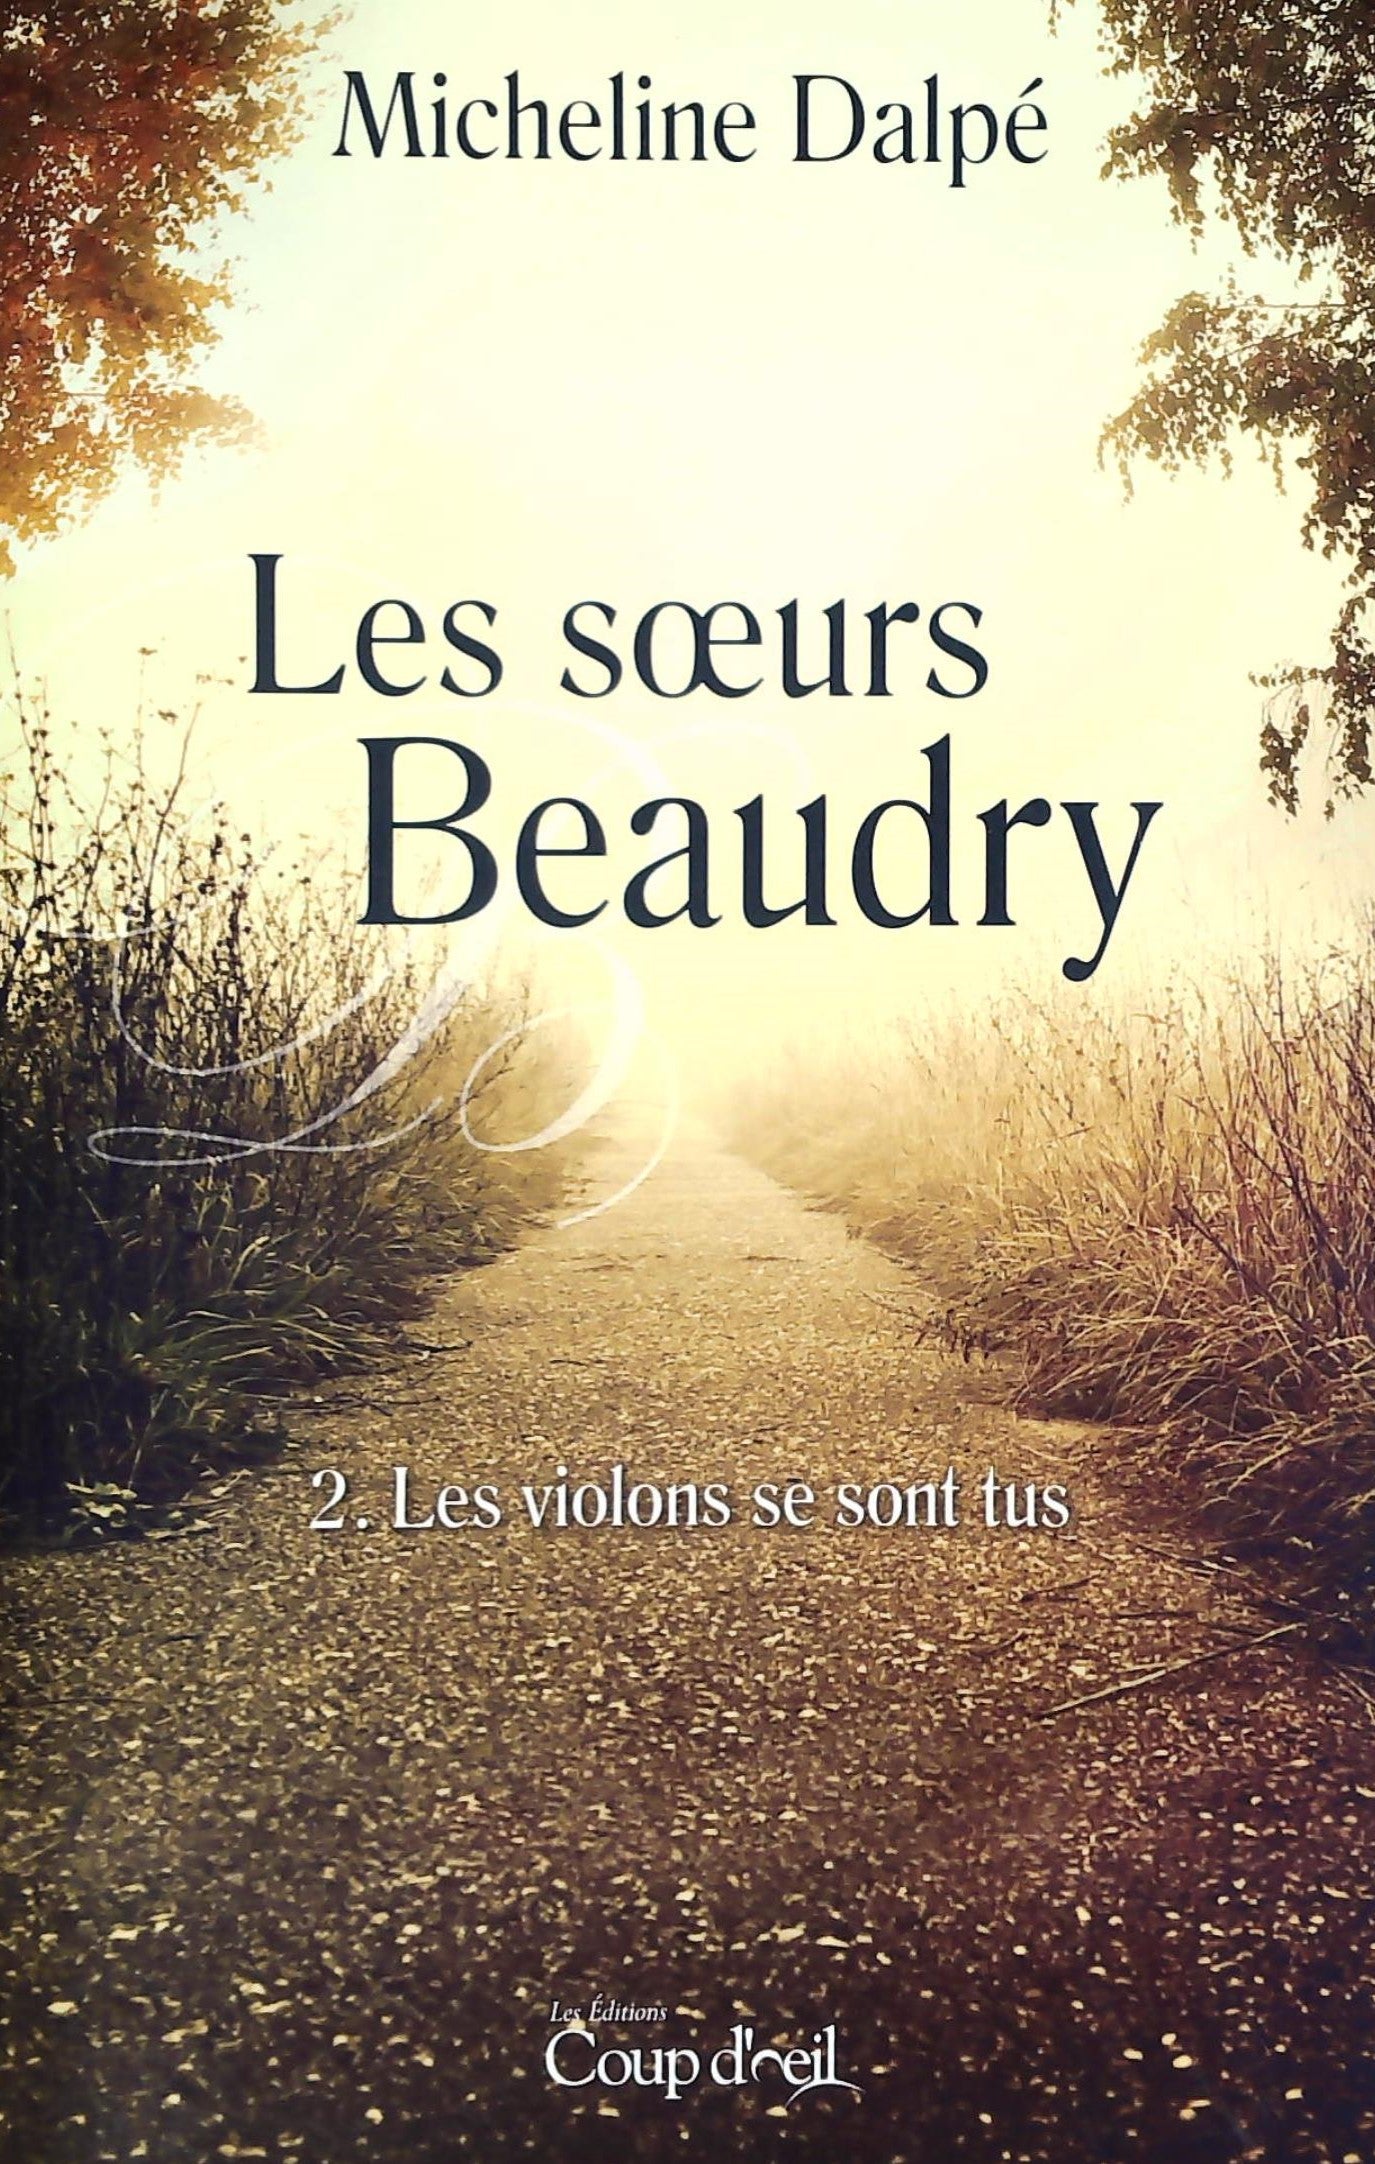 Livre ISBN  Les soeurs Beaudry # 2 : Les violons se sont tus (Micheline Dalpé)